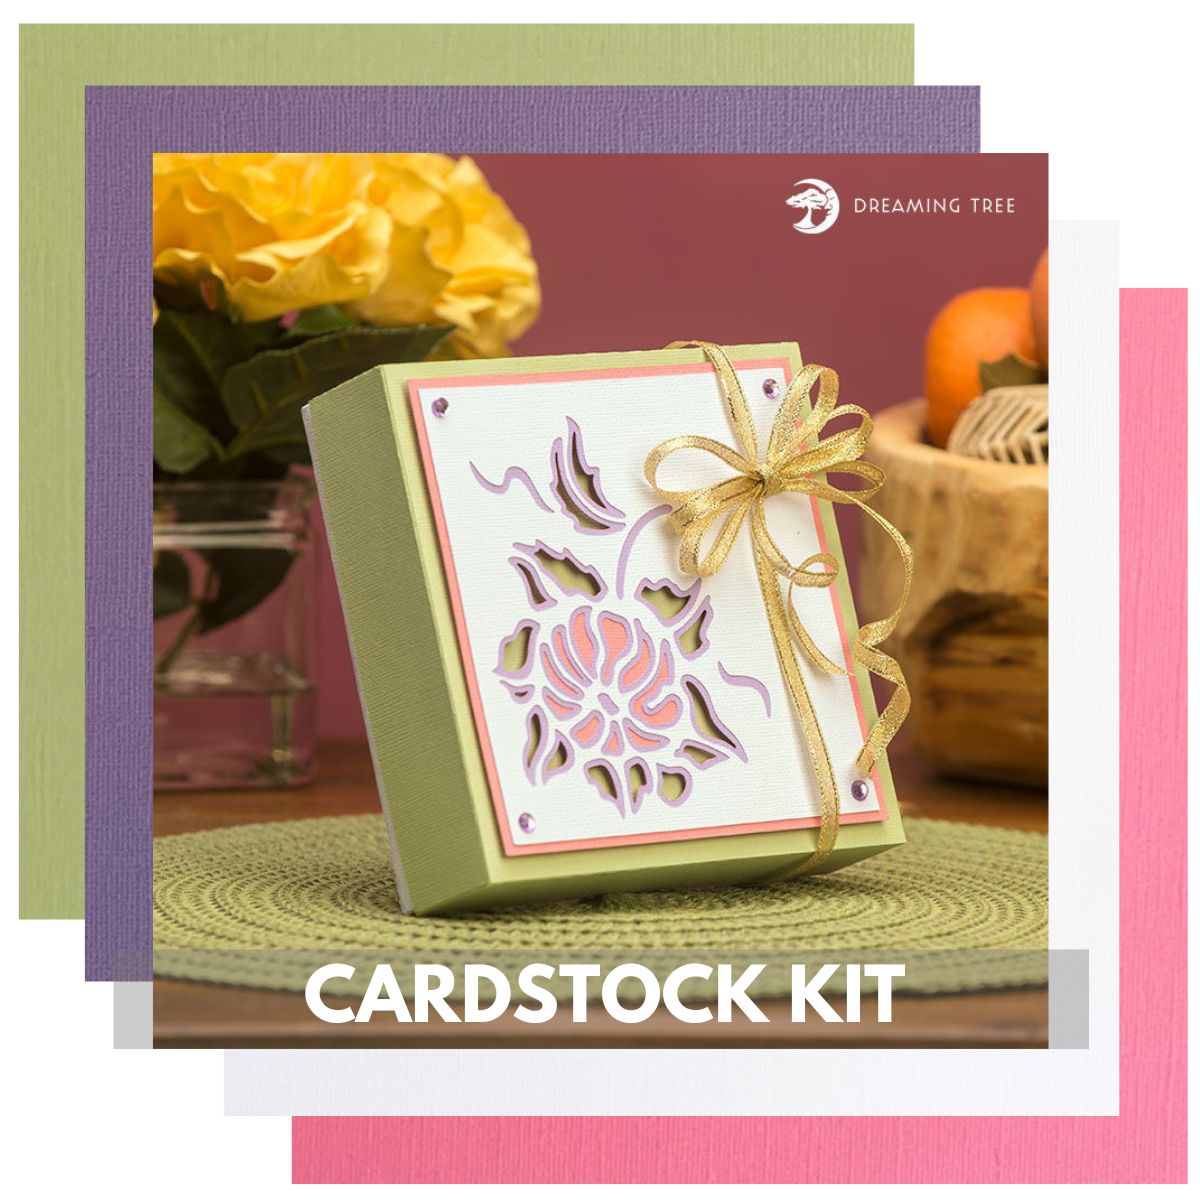 floral gift box cardstock kit for handmade gift for mom